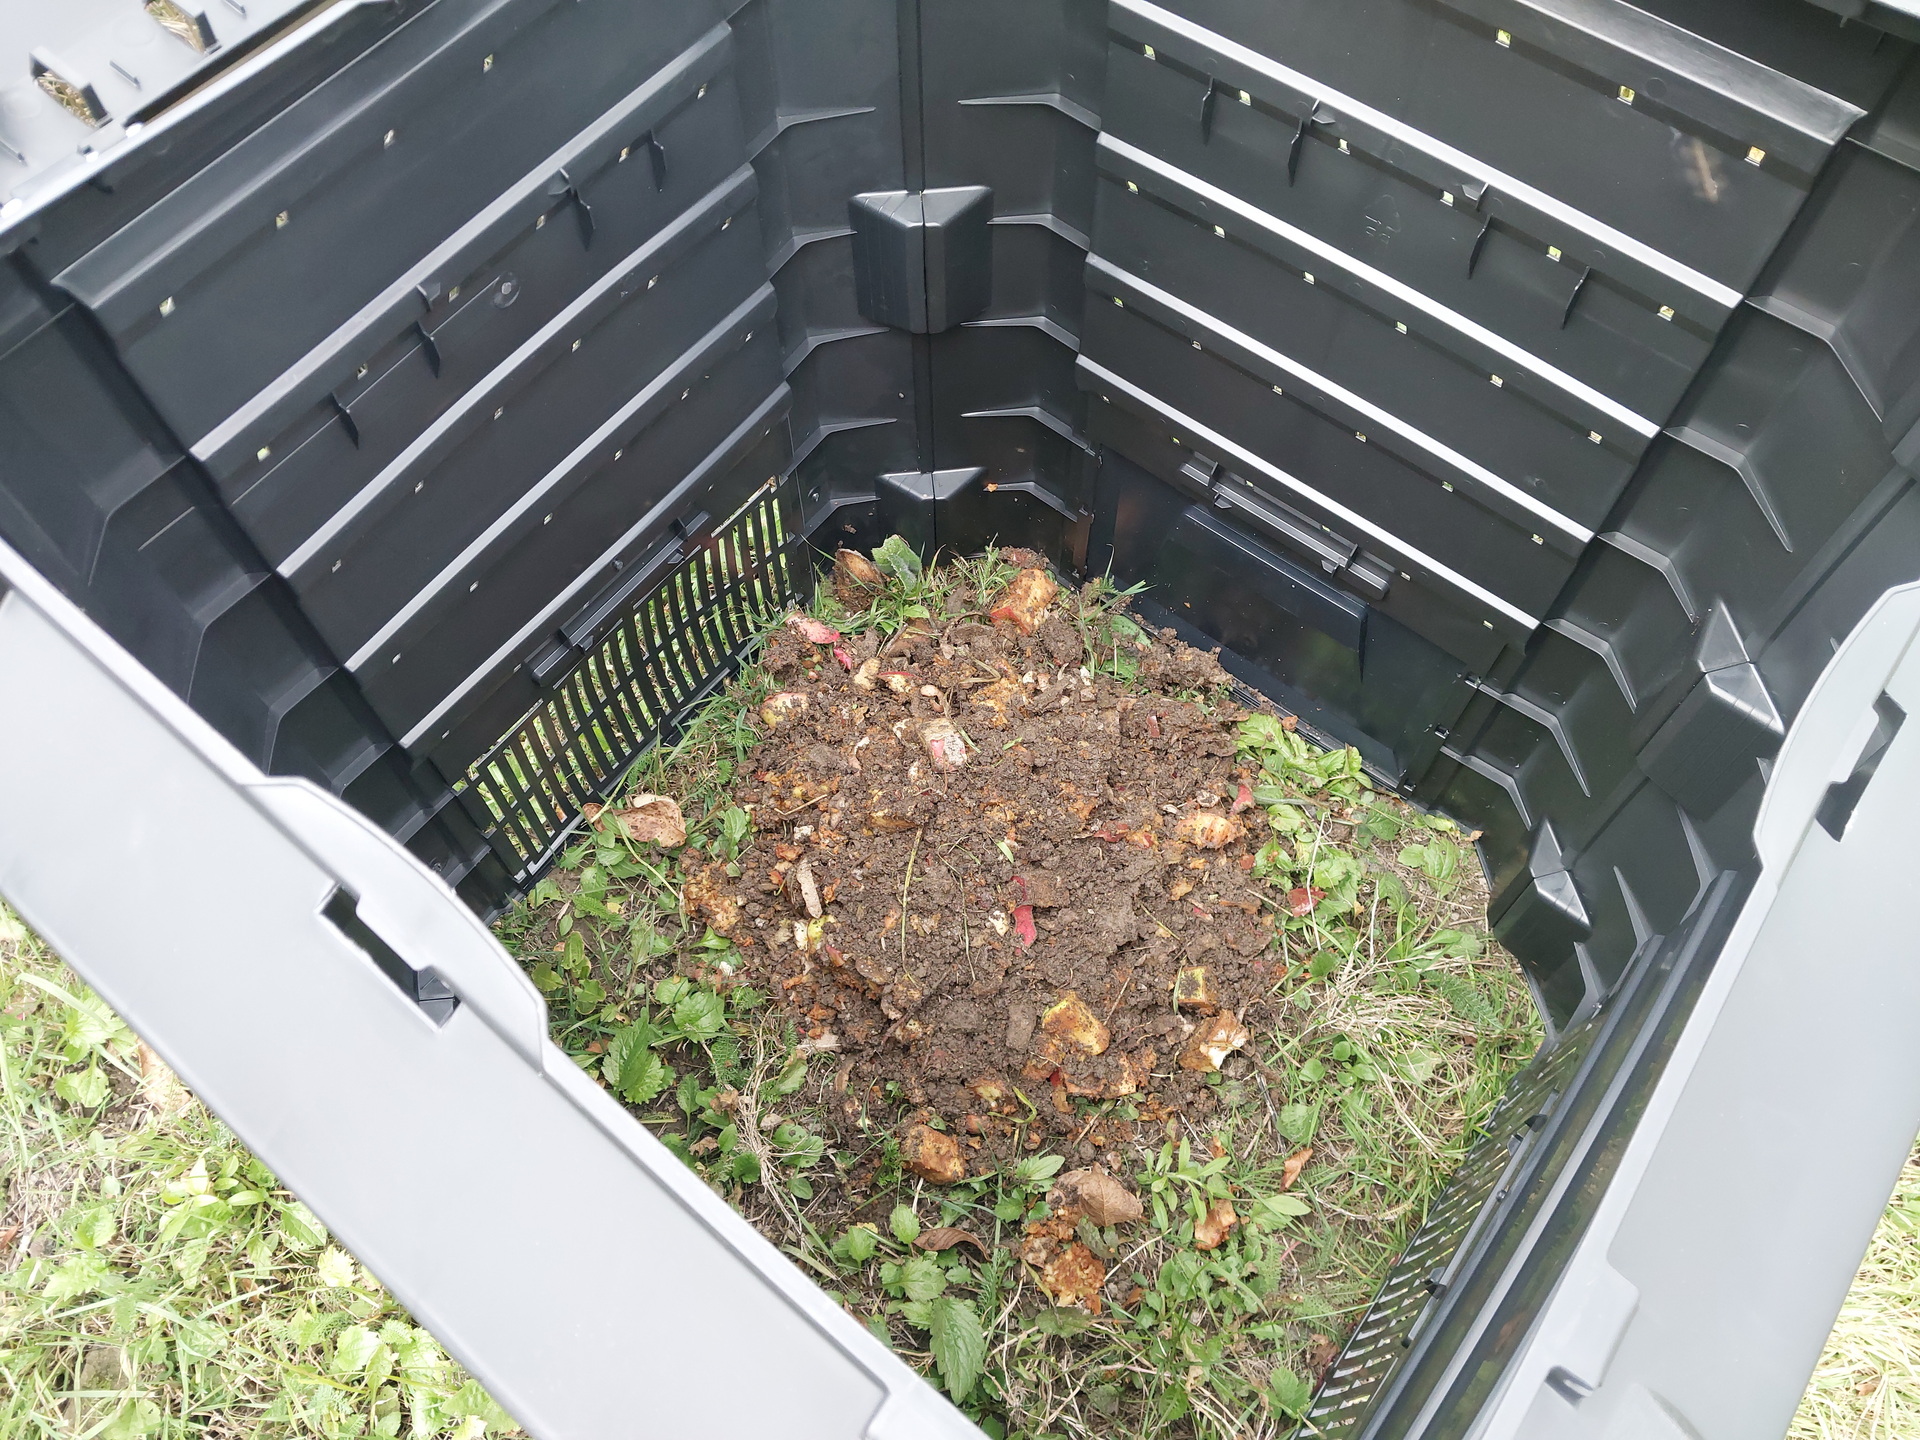 Na tym obrazku widzimy górkę kompostu z trawy, która jest gotowa do wykorzystania. Kompost jest ciemnobrązowy i dobrze rozłożony, co świadczy o skutecznym procesie rozkładu organicznej trawy. Ta wartościowa substancja organiczna może być wykorzystana jako naturalny nawóz w ogrodzie, dostarczając składników odżywczych roślinom i wspierając zdrowy wzrost